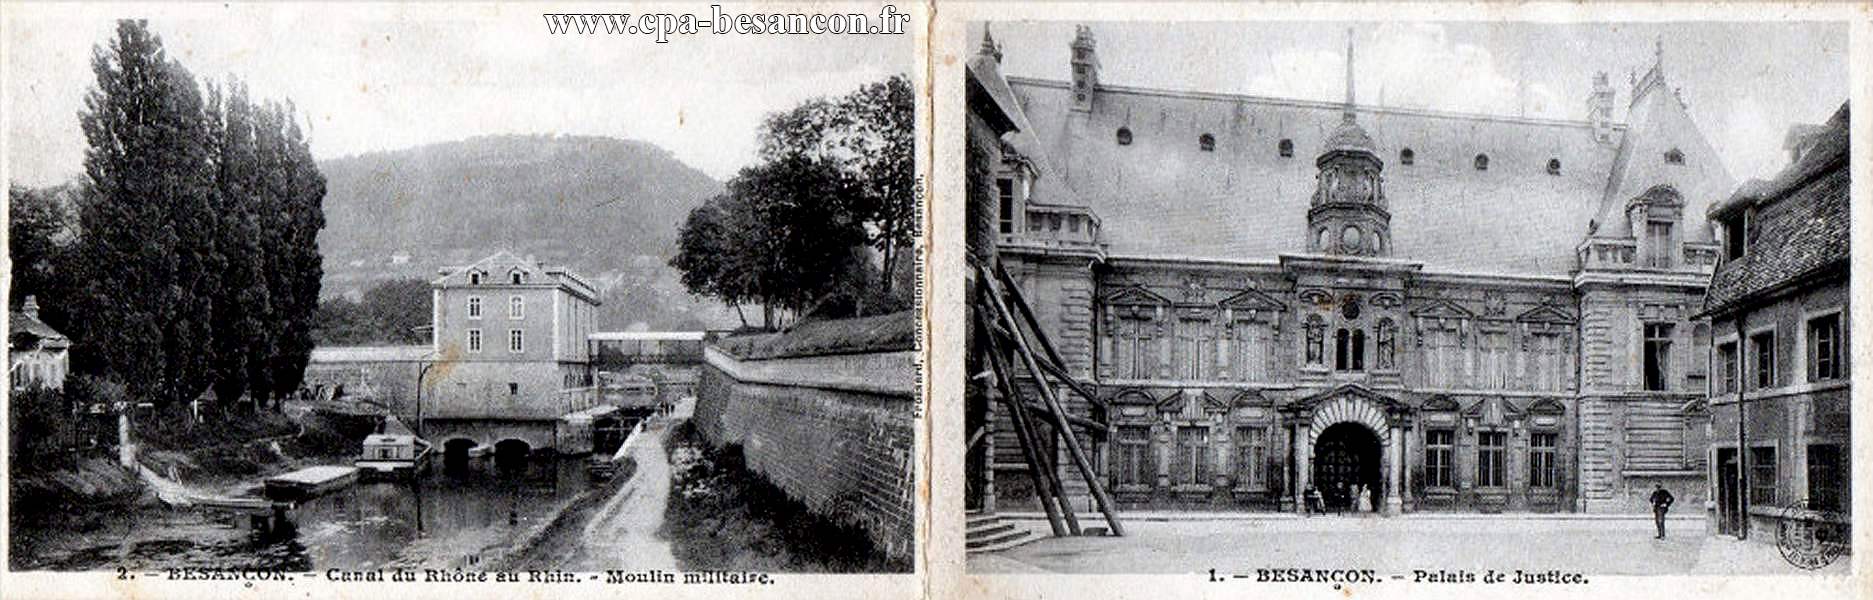 1. - BESANÇON. - Palais de Justice. & 2. - BESANÇON. - Canal du Rhône au Rhin. - Moulin militaire.